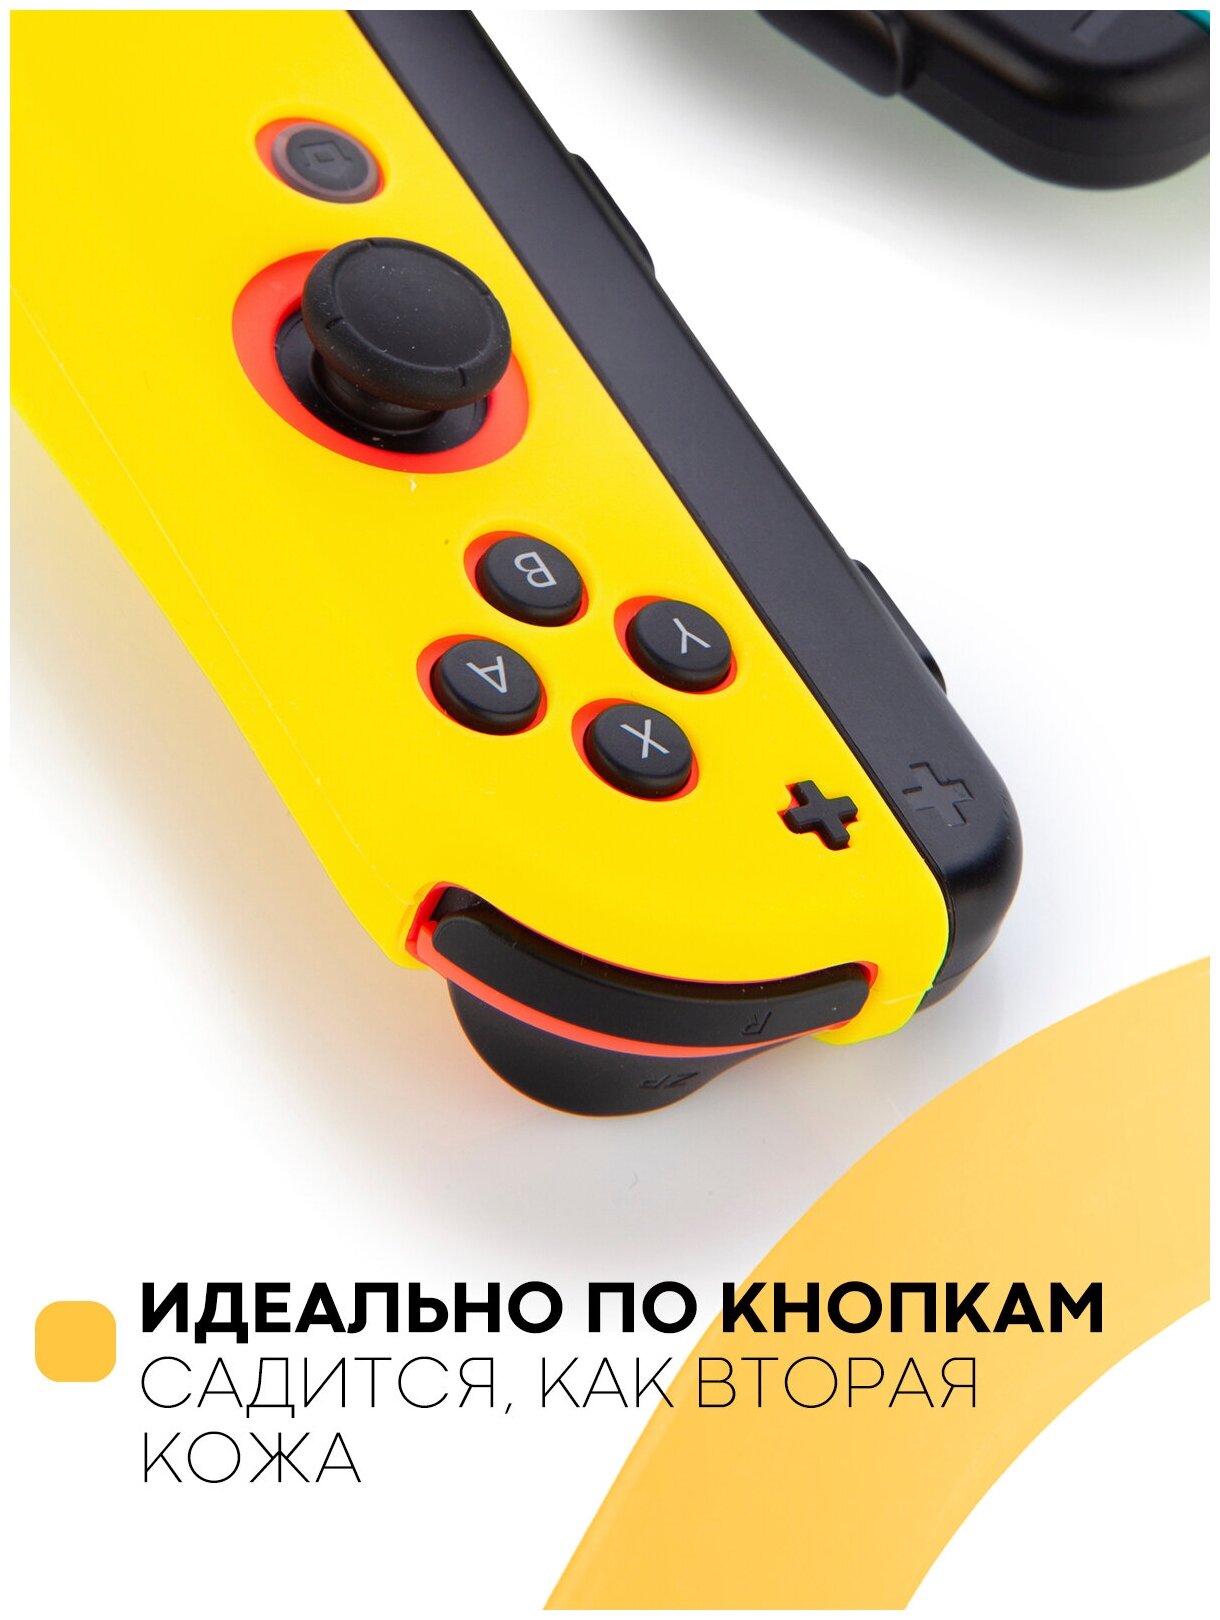 Защитные силиконовые чехлы для Joy-Con Nintendo Switch и Nintendo Switch OLED (Нинтендо Свитч), желтые